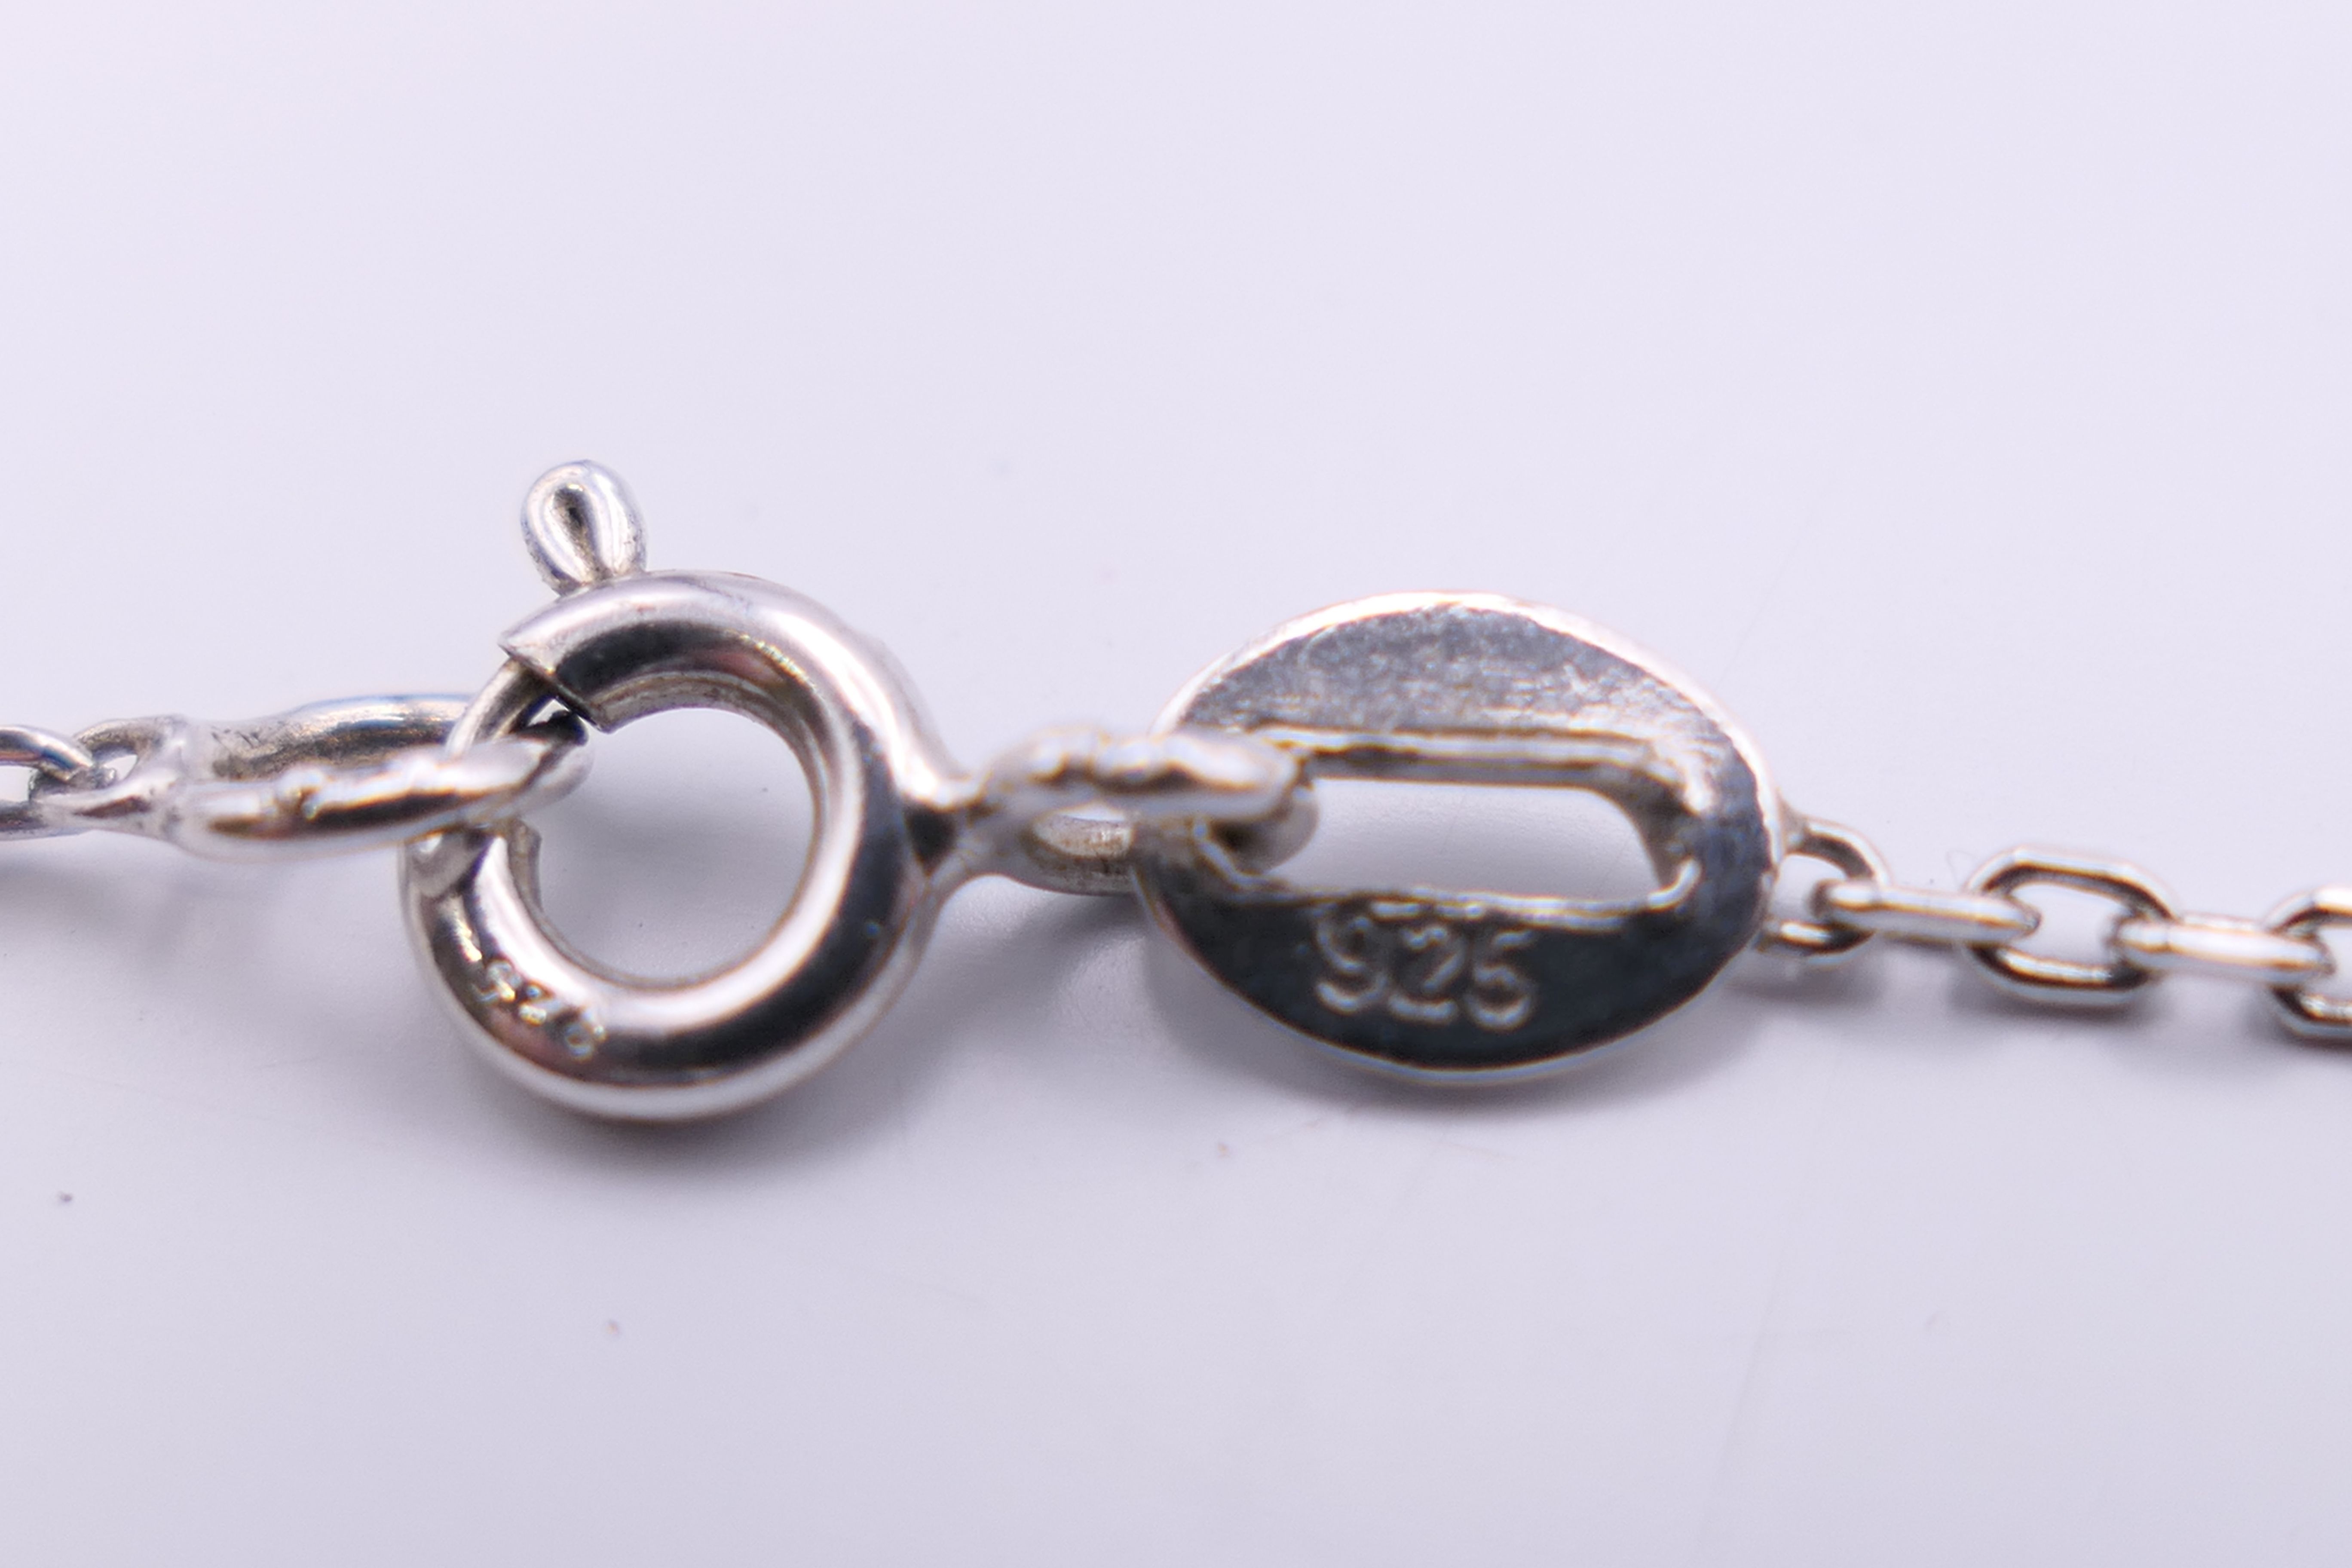 An Art Nouveau style drop pendant on a silver chain. Chain 46 cm long, pendant 5.5 cm high. - Image 6 of 7